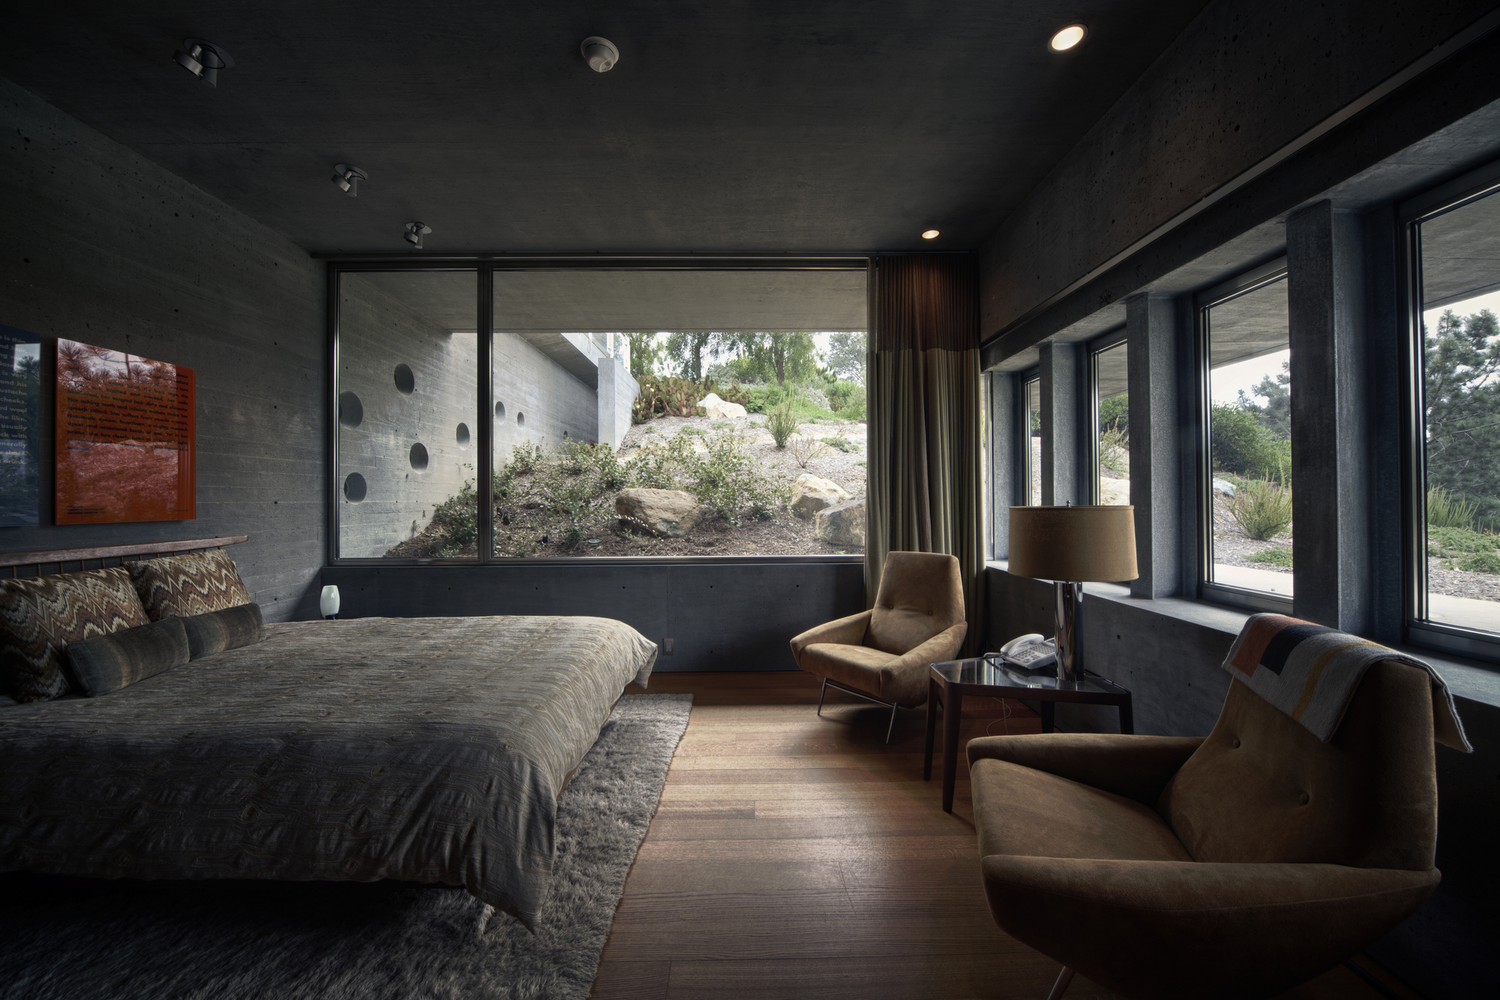 General 1500x1000 modern interior interior design room bedroom window armchair bed